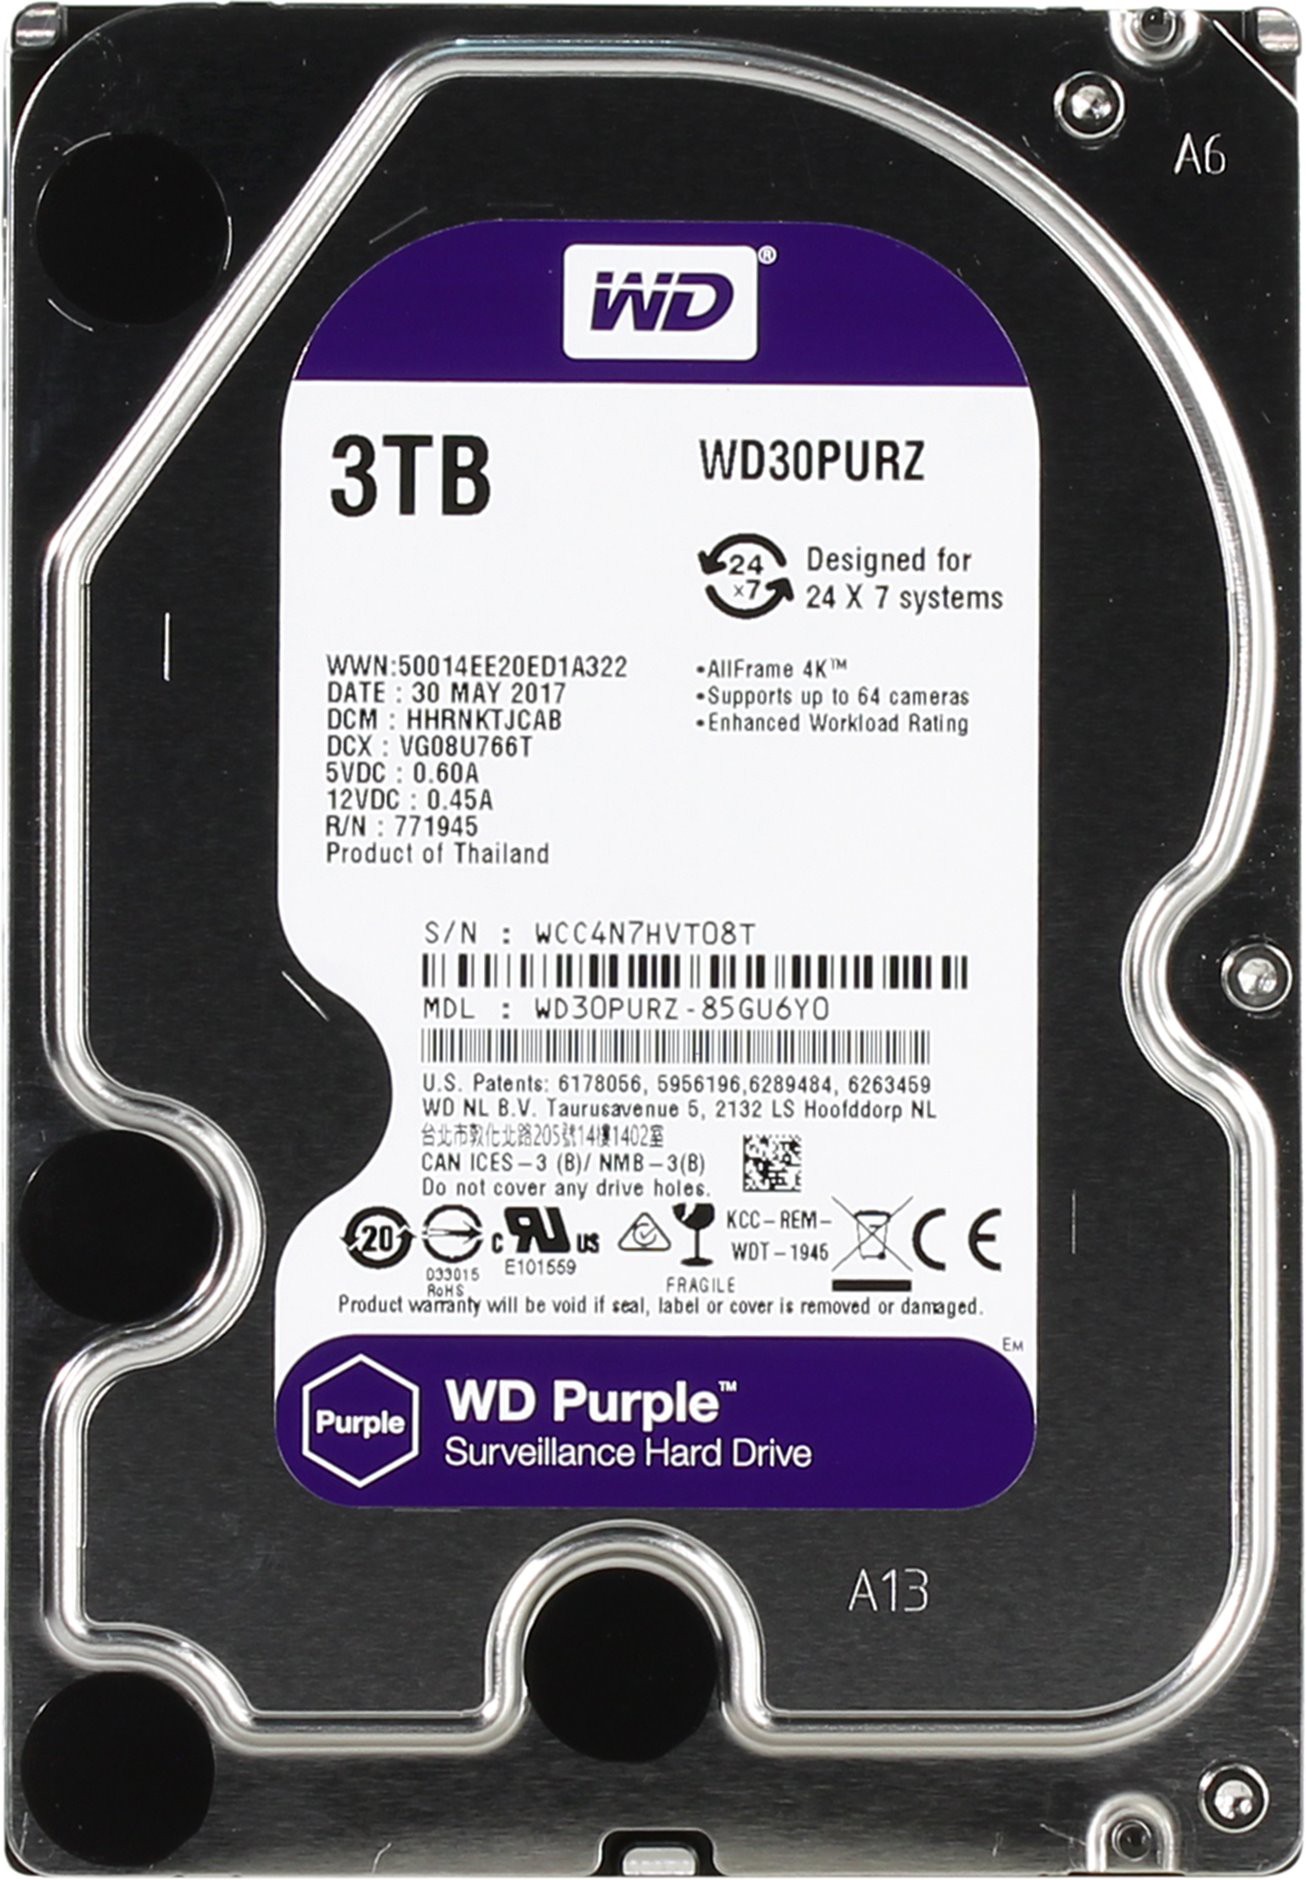   3Tb Western Digital WD30PURZ Purple (SATA 6Gb/s, 5400rpm, 64b)